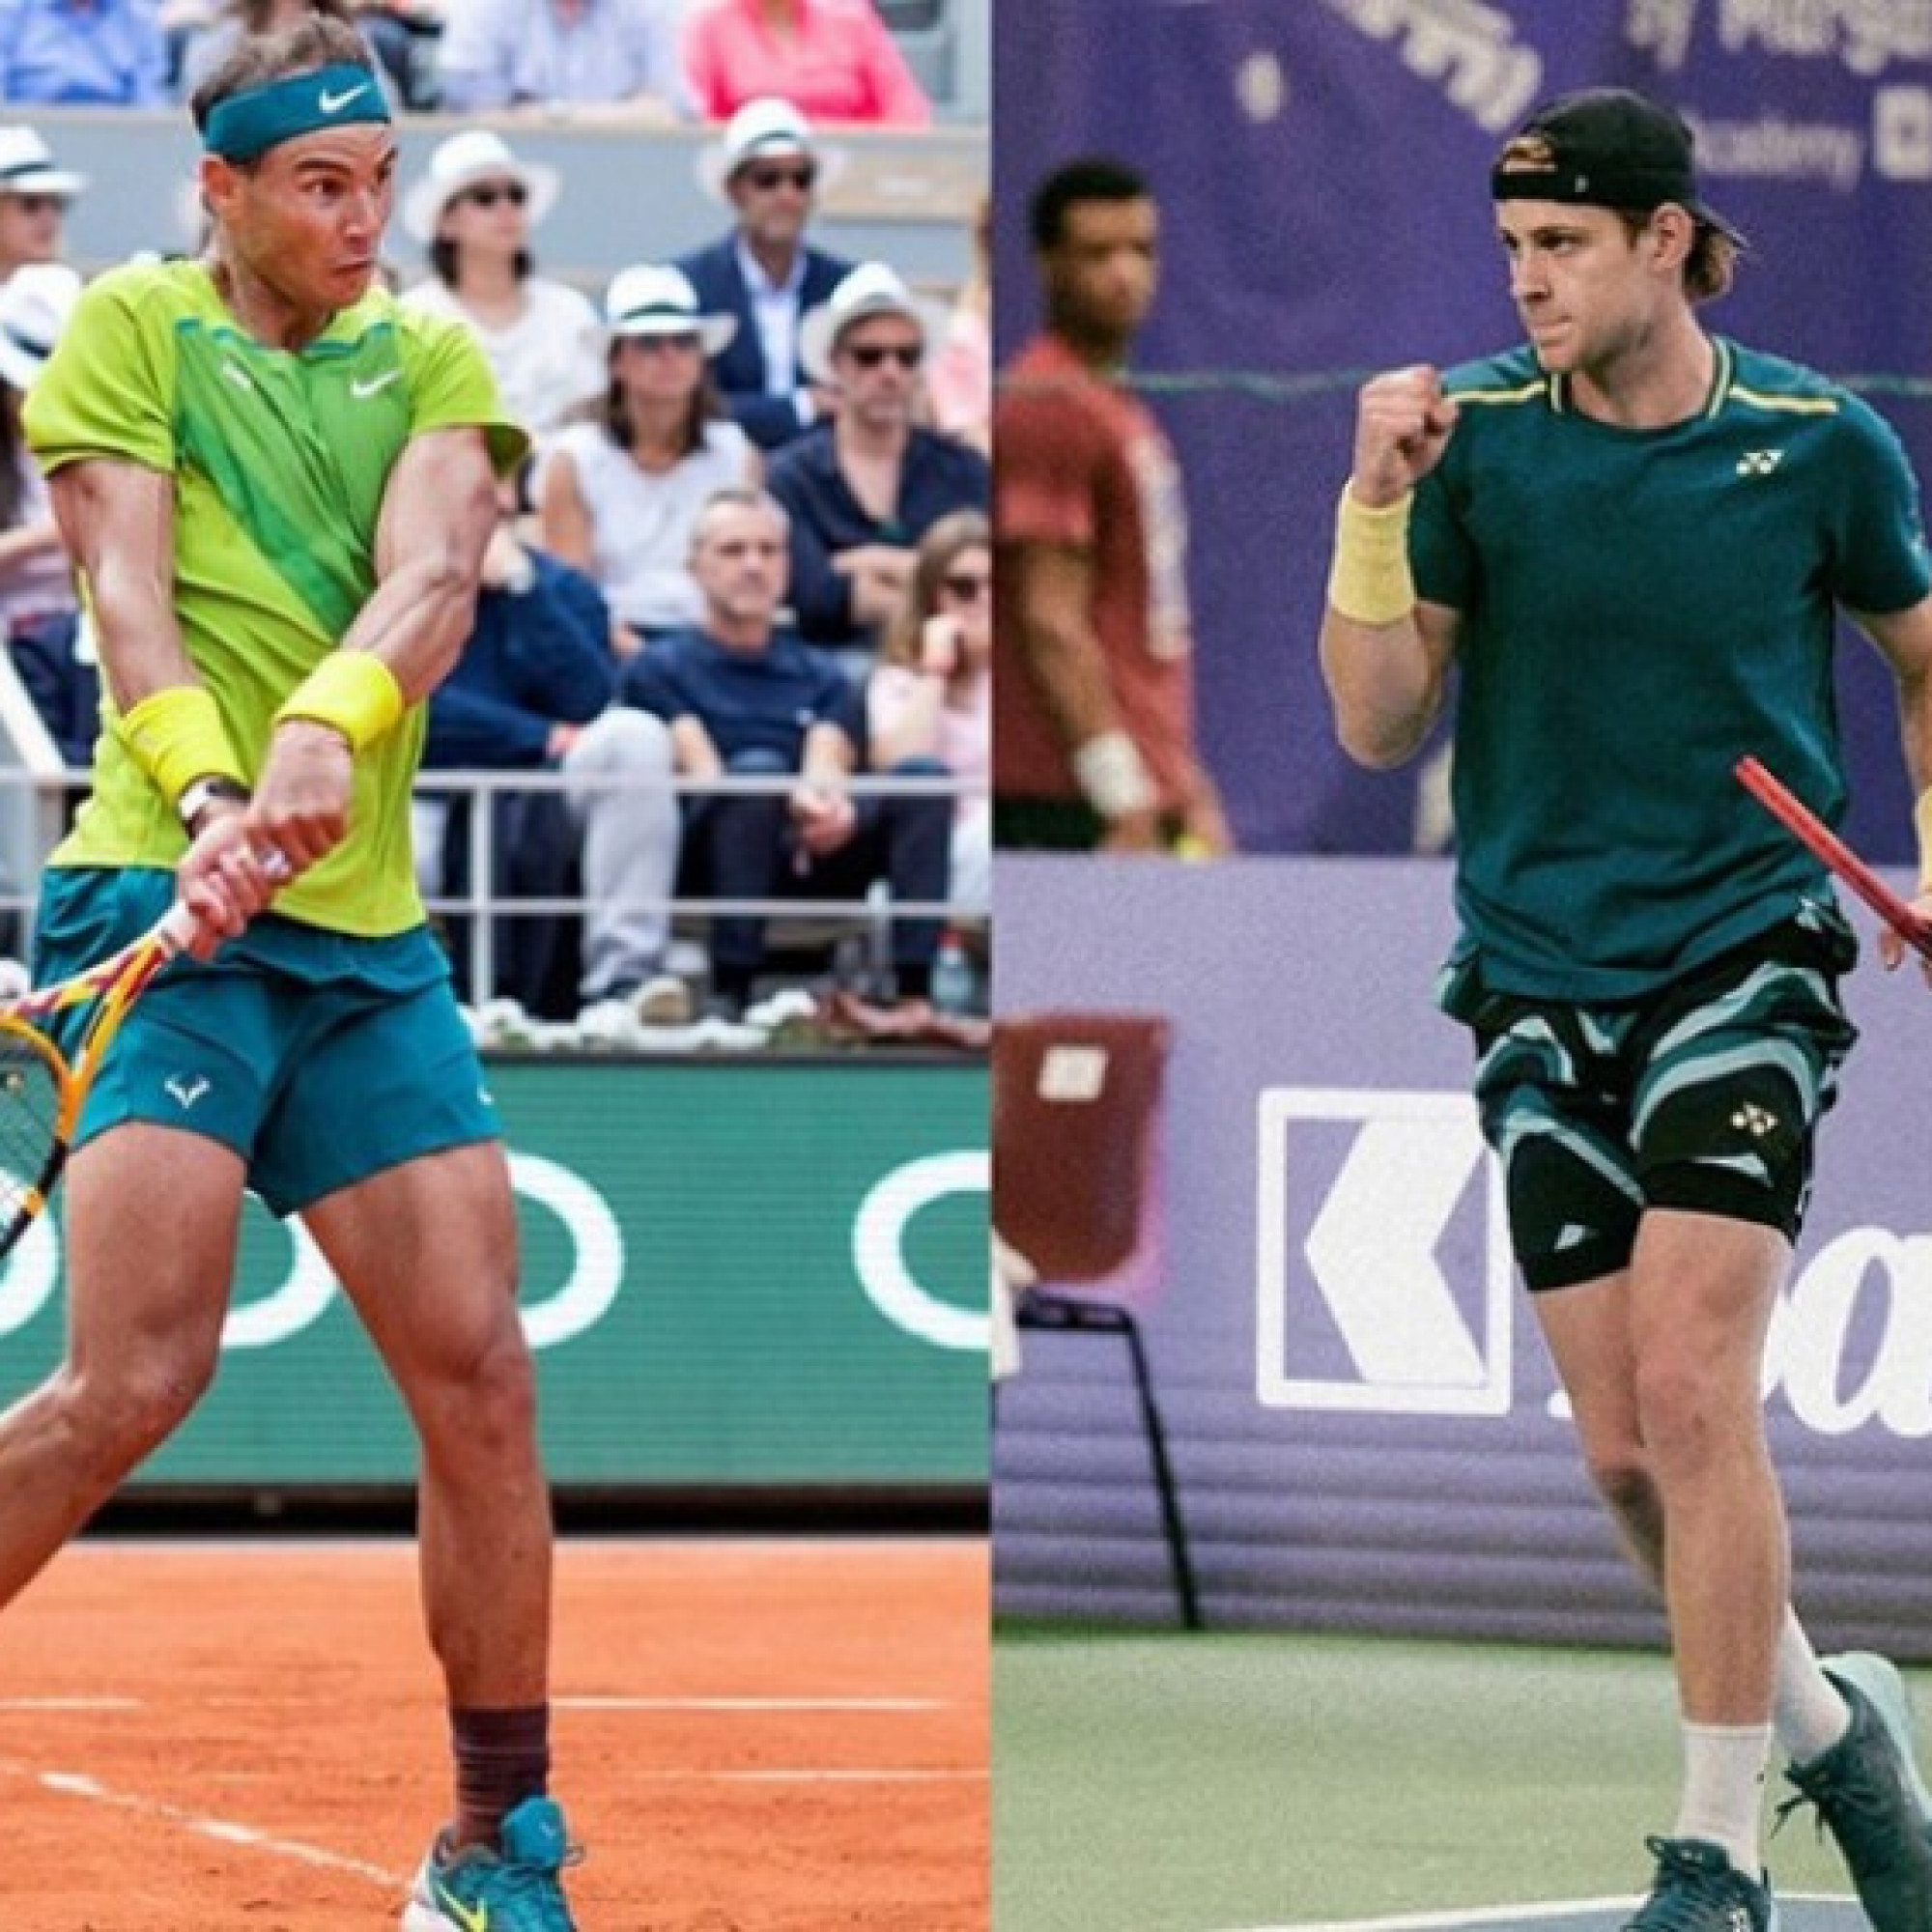  - Trực tiếp tennis Zizou Bergs - Nadal: "Vua đất nện" háo hức (Rome Open)